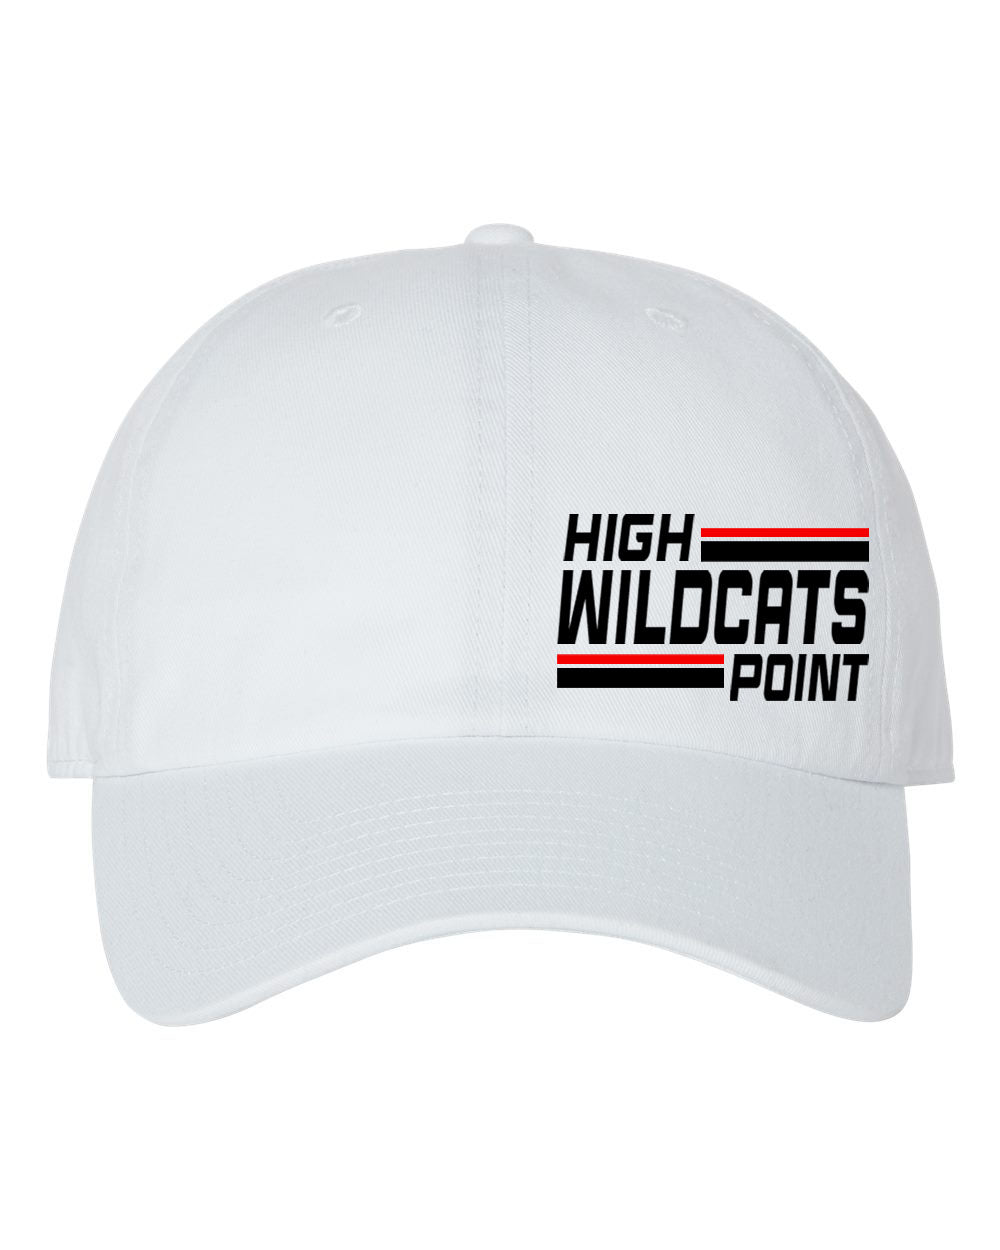 Wildcats Cheer design 4 Trucker Hat